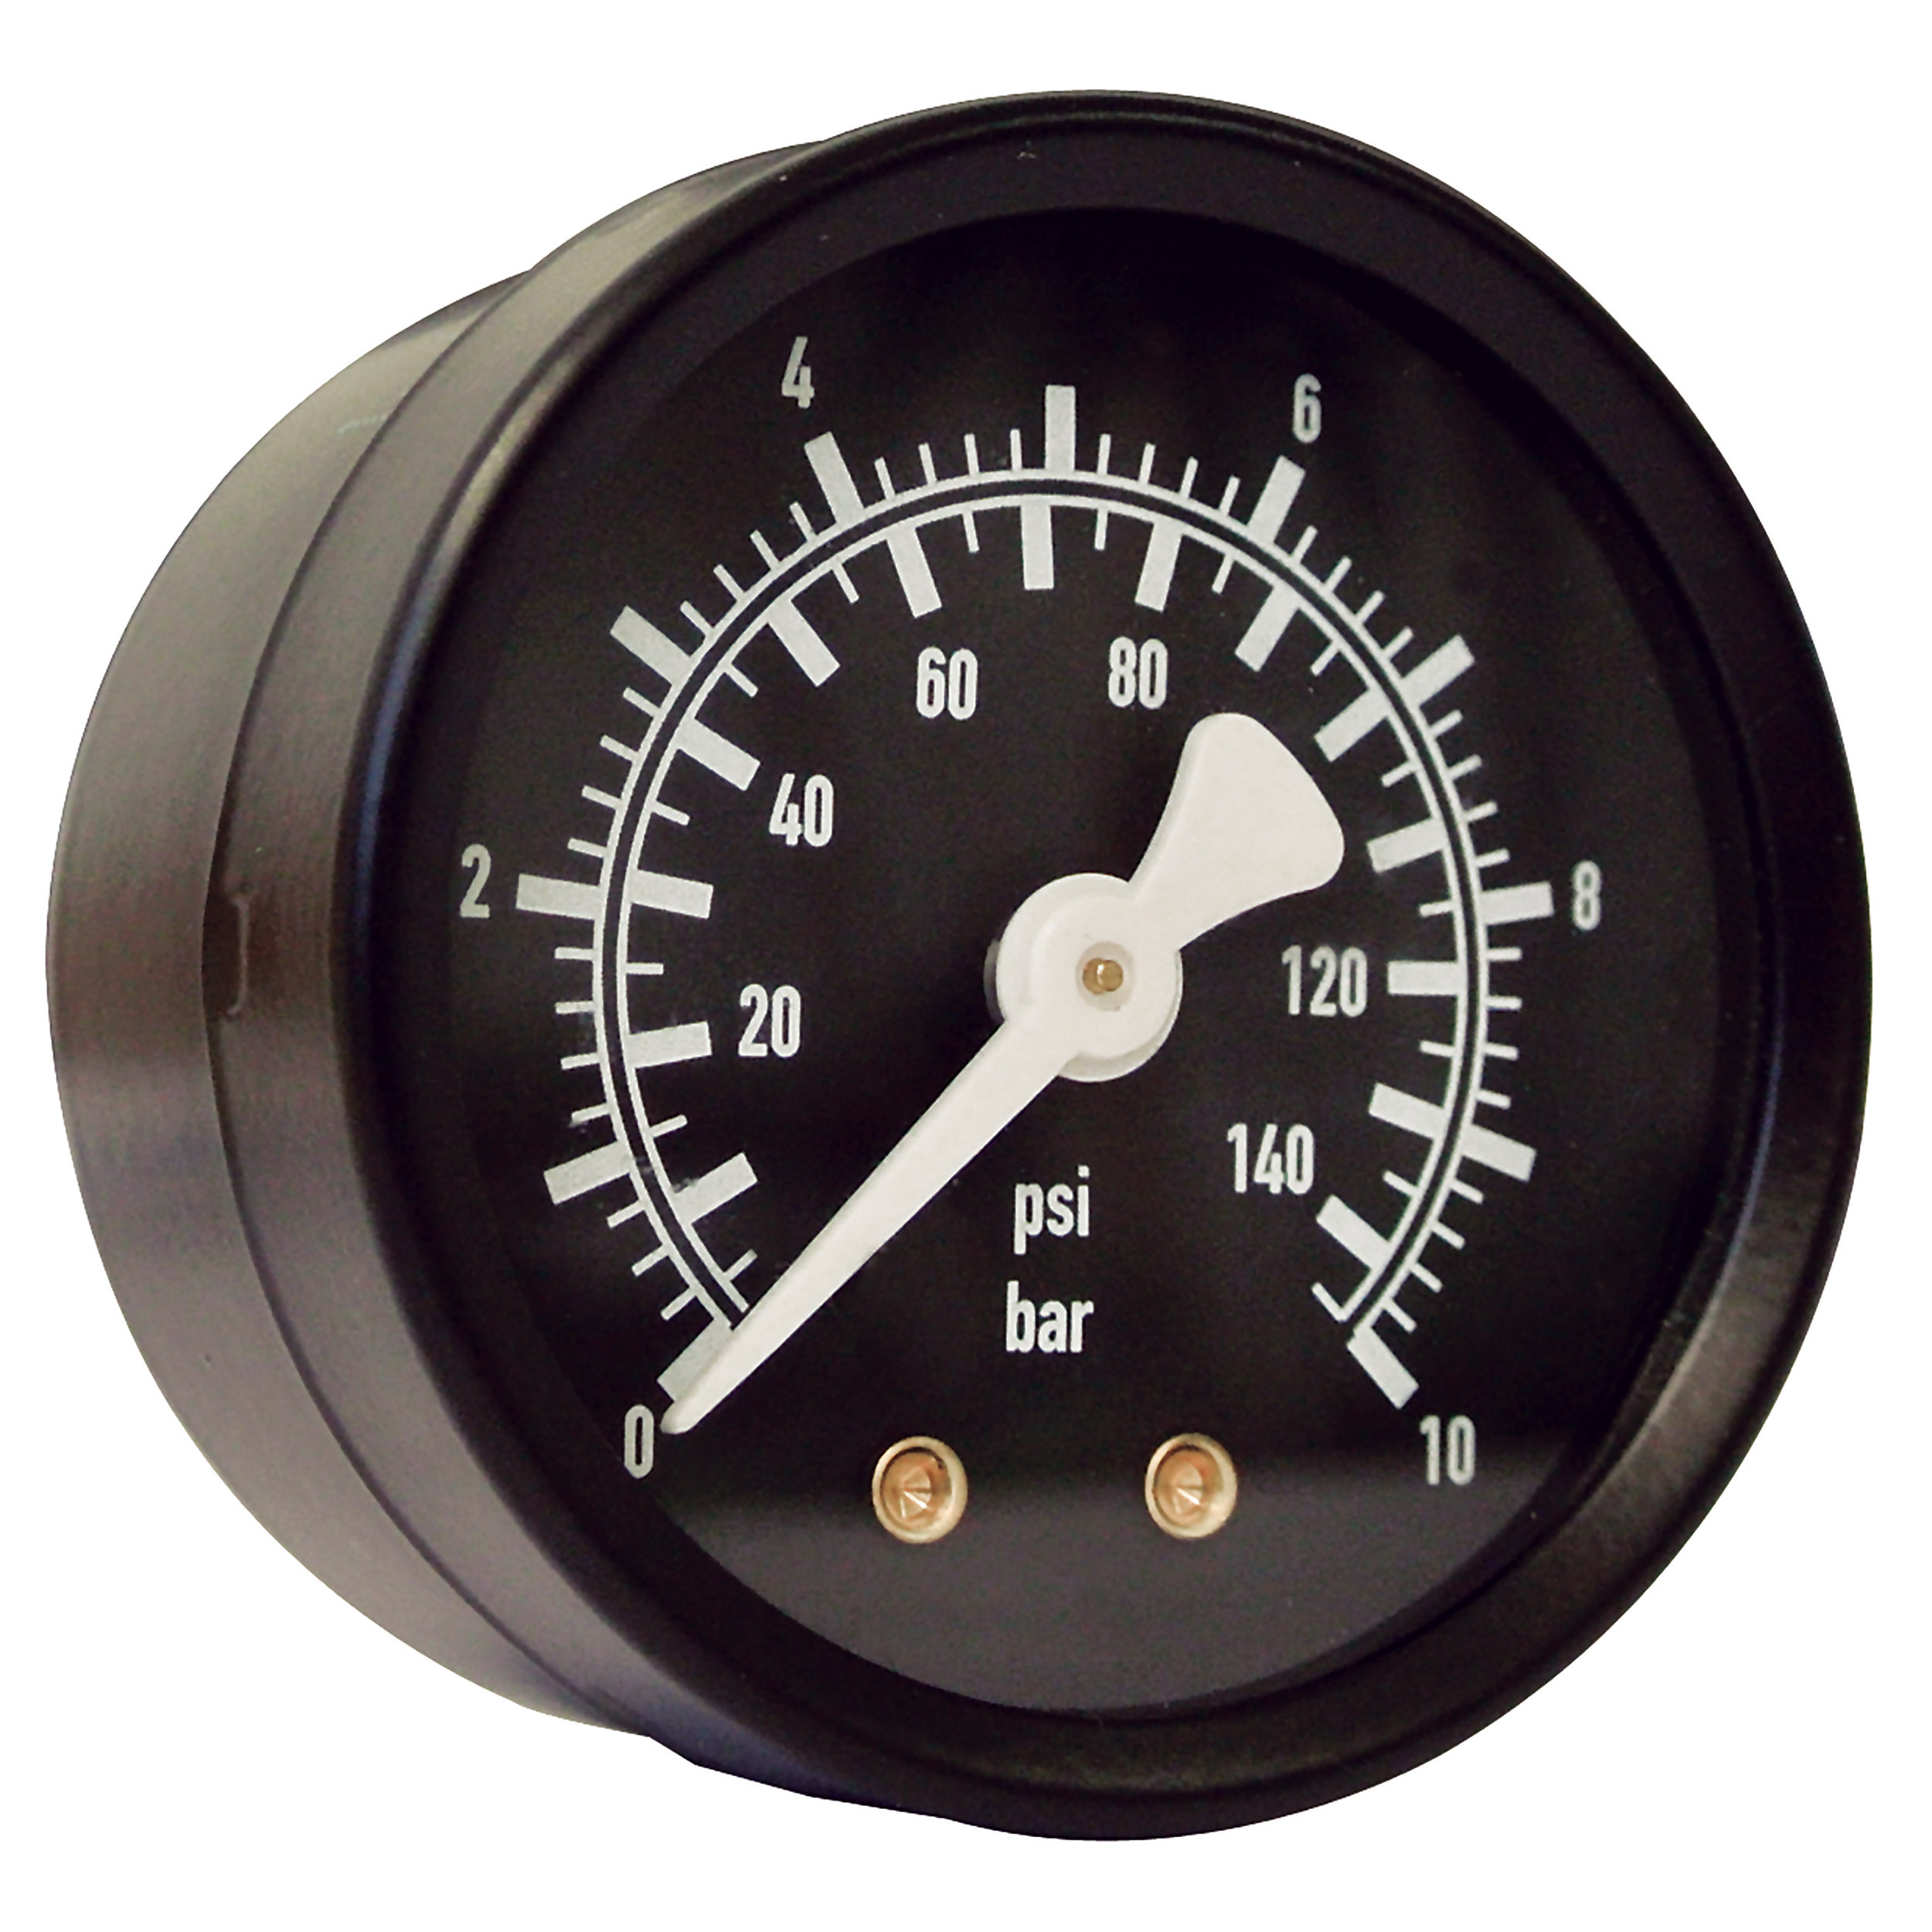 Rohrfeder-Manometer Ø50, Kl. 2,5, Glassch./Stahlgeh., Grund/Aufdruck: schwarz/weiß, Anschluss waagr., G¼, Anzeigebereich: 0–10 bar